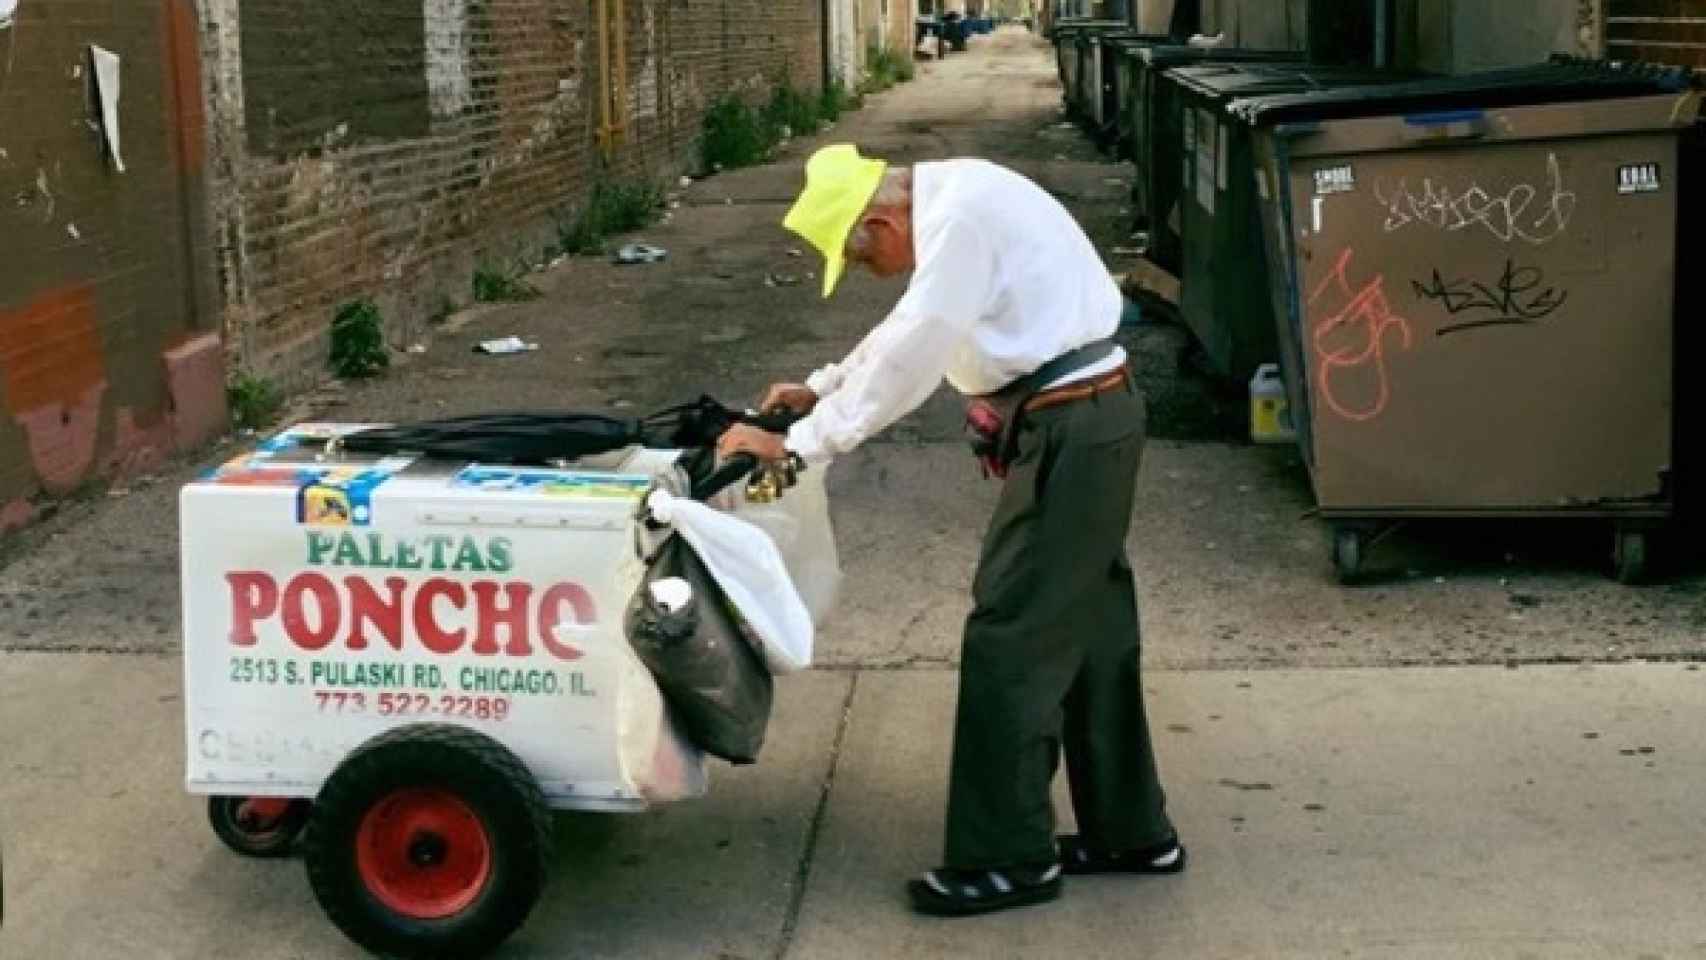 Fidencio arrastrando su carrito de helados con su característica gorra amarilla.